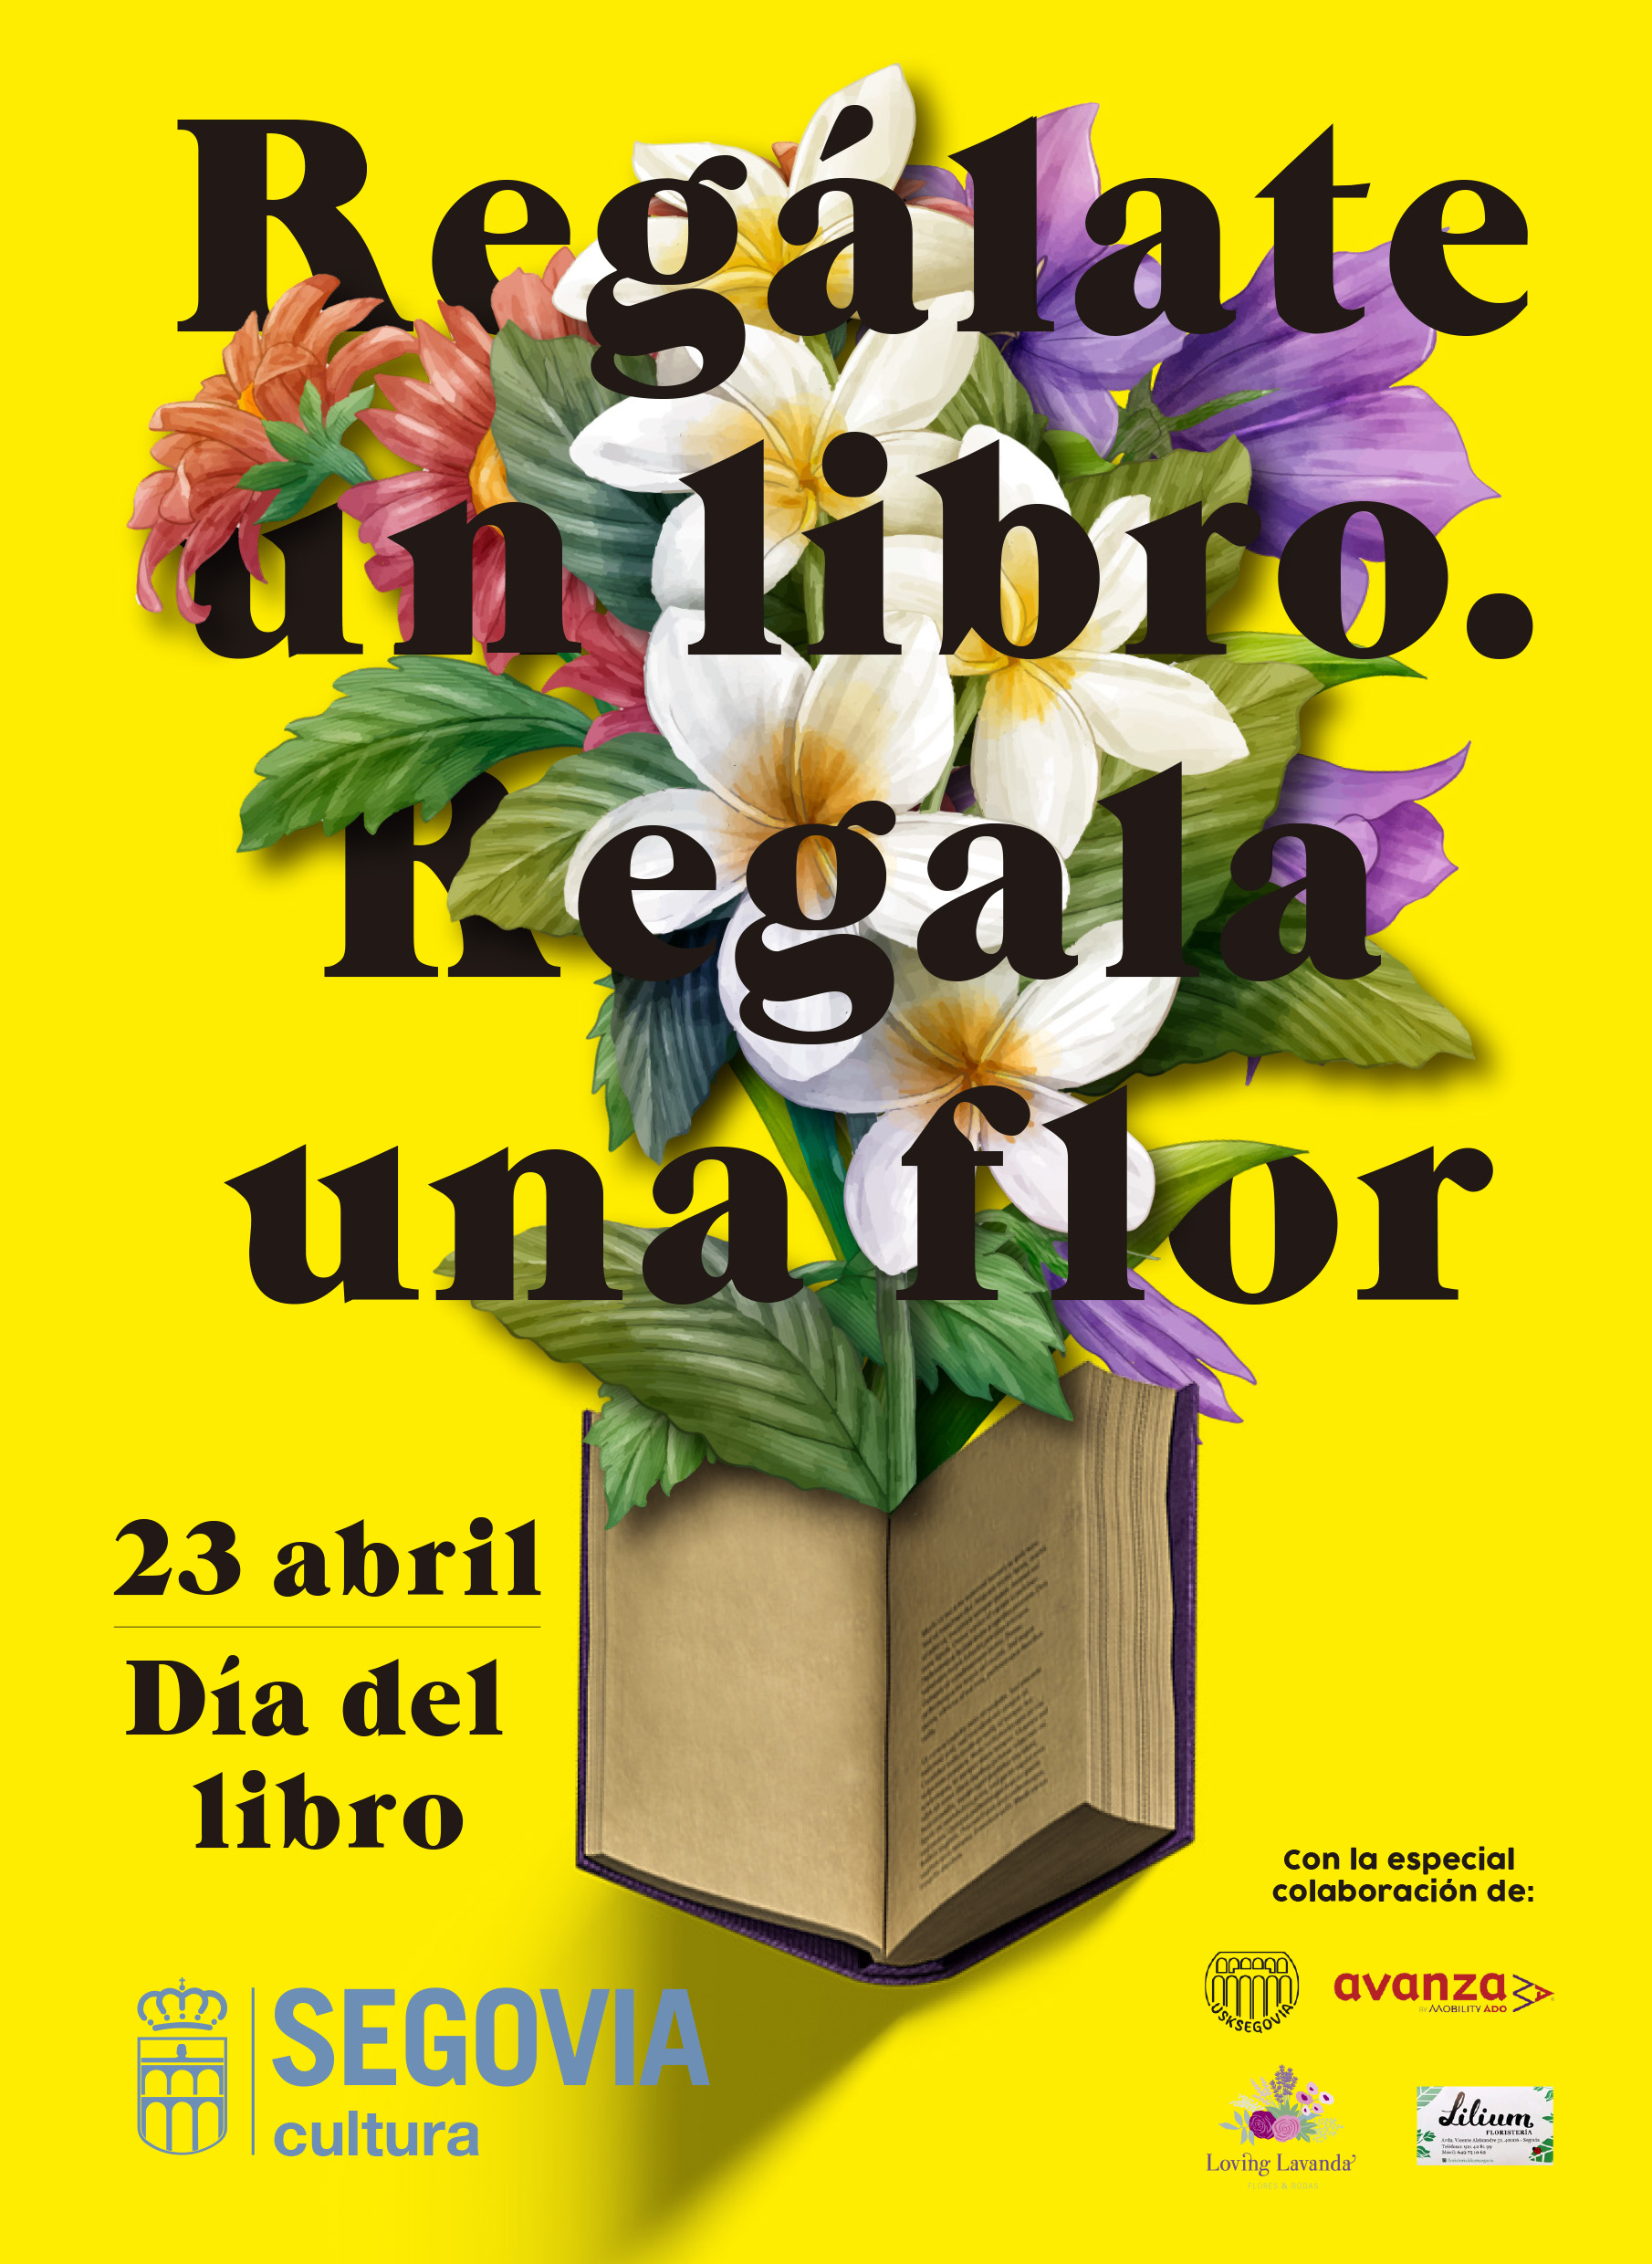 El Día del Libro en Segovia bajo el lema “Regálate un libro, regala una flor”